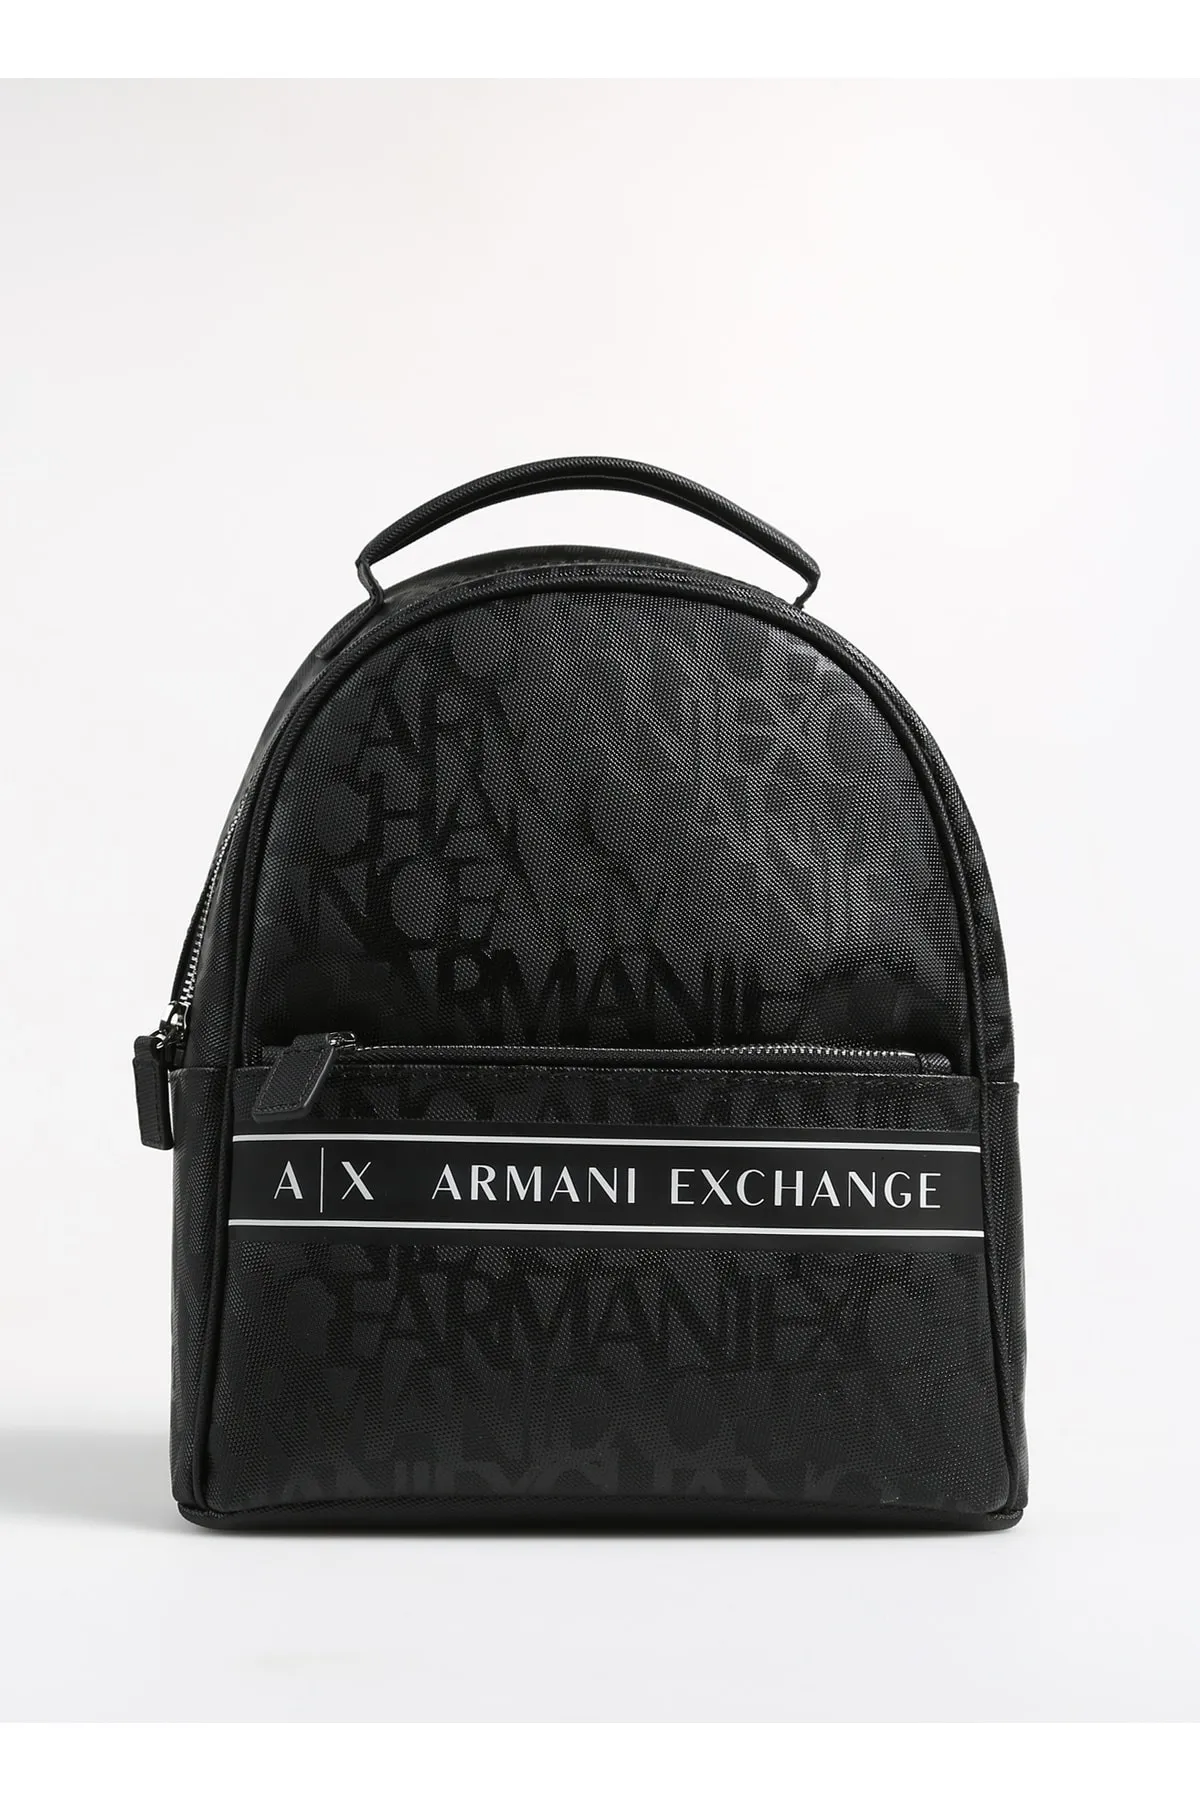 ARMANI EXCHANGE - Kadın Sırt Çantası-Siyah